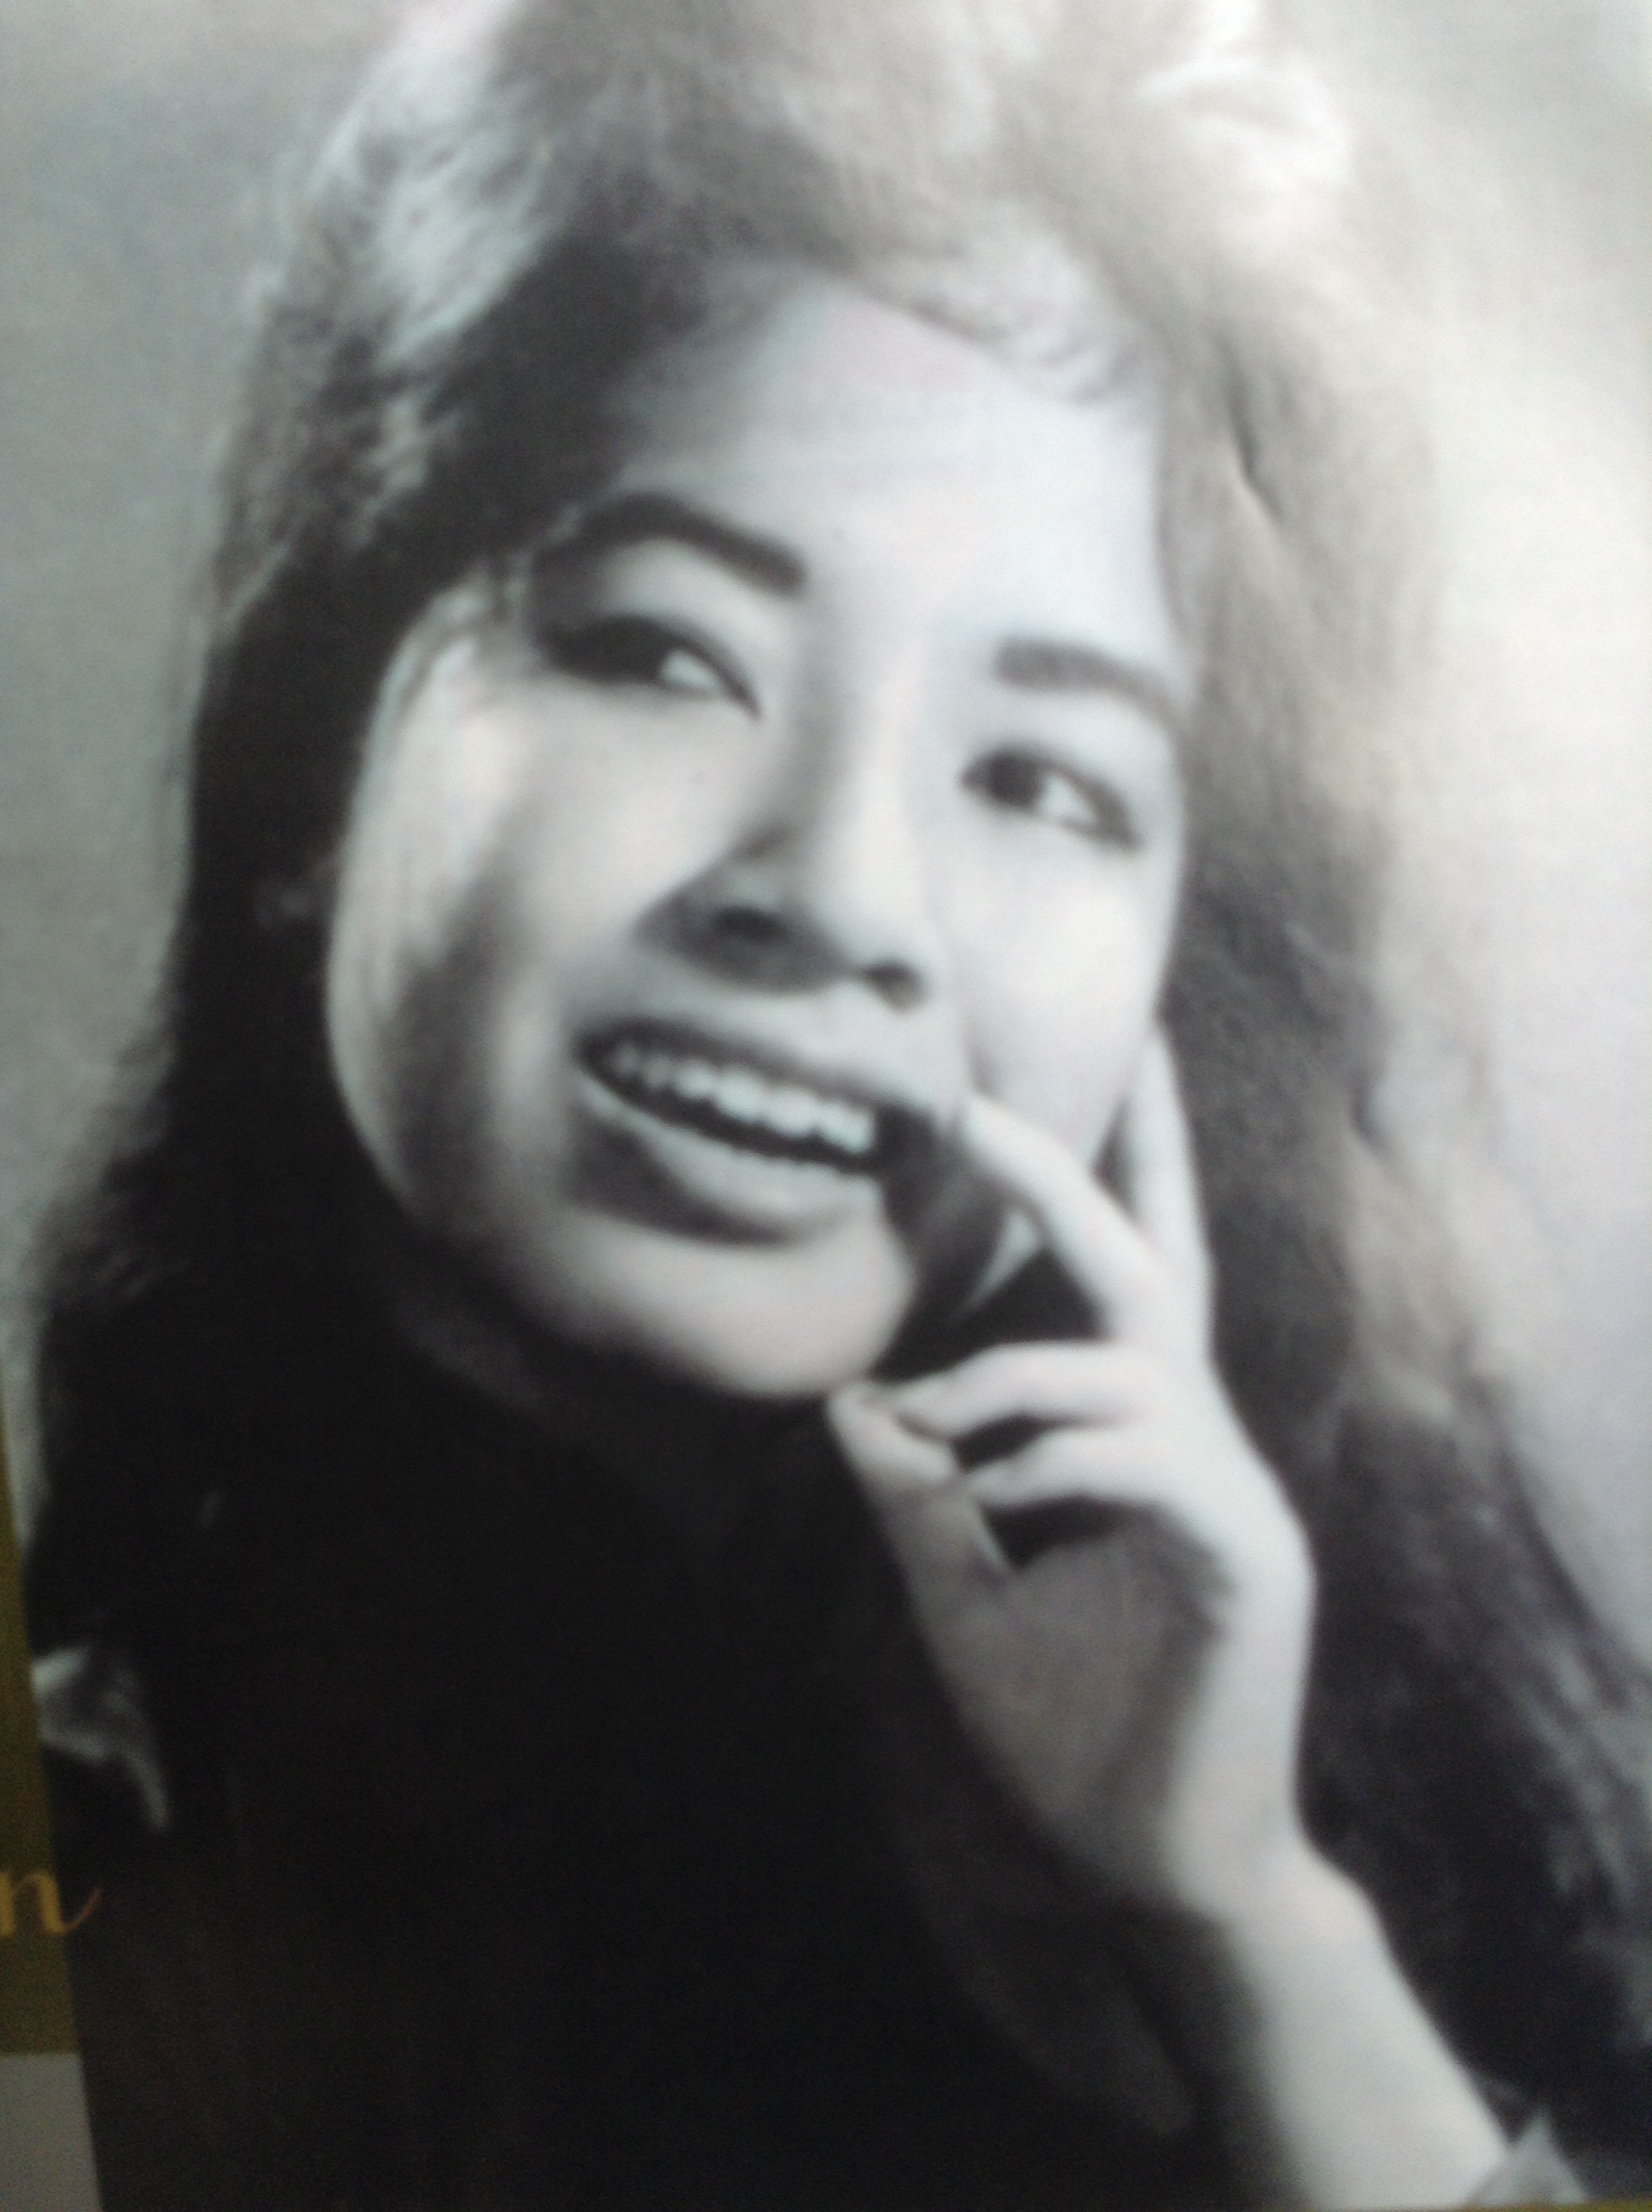 Phụ nữ Việt trong những bức ảnh đen trắng luôn mang trên mình sự tinh tế, thoáng chân chất nhưng không kém phần quyến rũ. Những bức ảnh này mang đến cho người xem nhiều cảm xúc khác nhau, đẹp mắt và đáng nhớ. Hãy cùng chiêm ngưỡng những hình ảnh của phụ nữ Việt trên nền đen trắng để thưởng thức tinh hoa văn hóa của dân tộc.